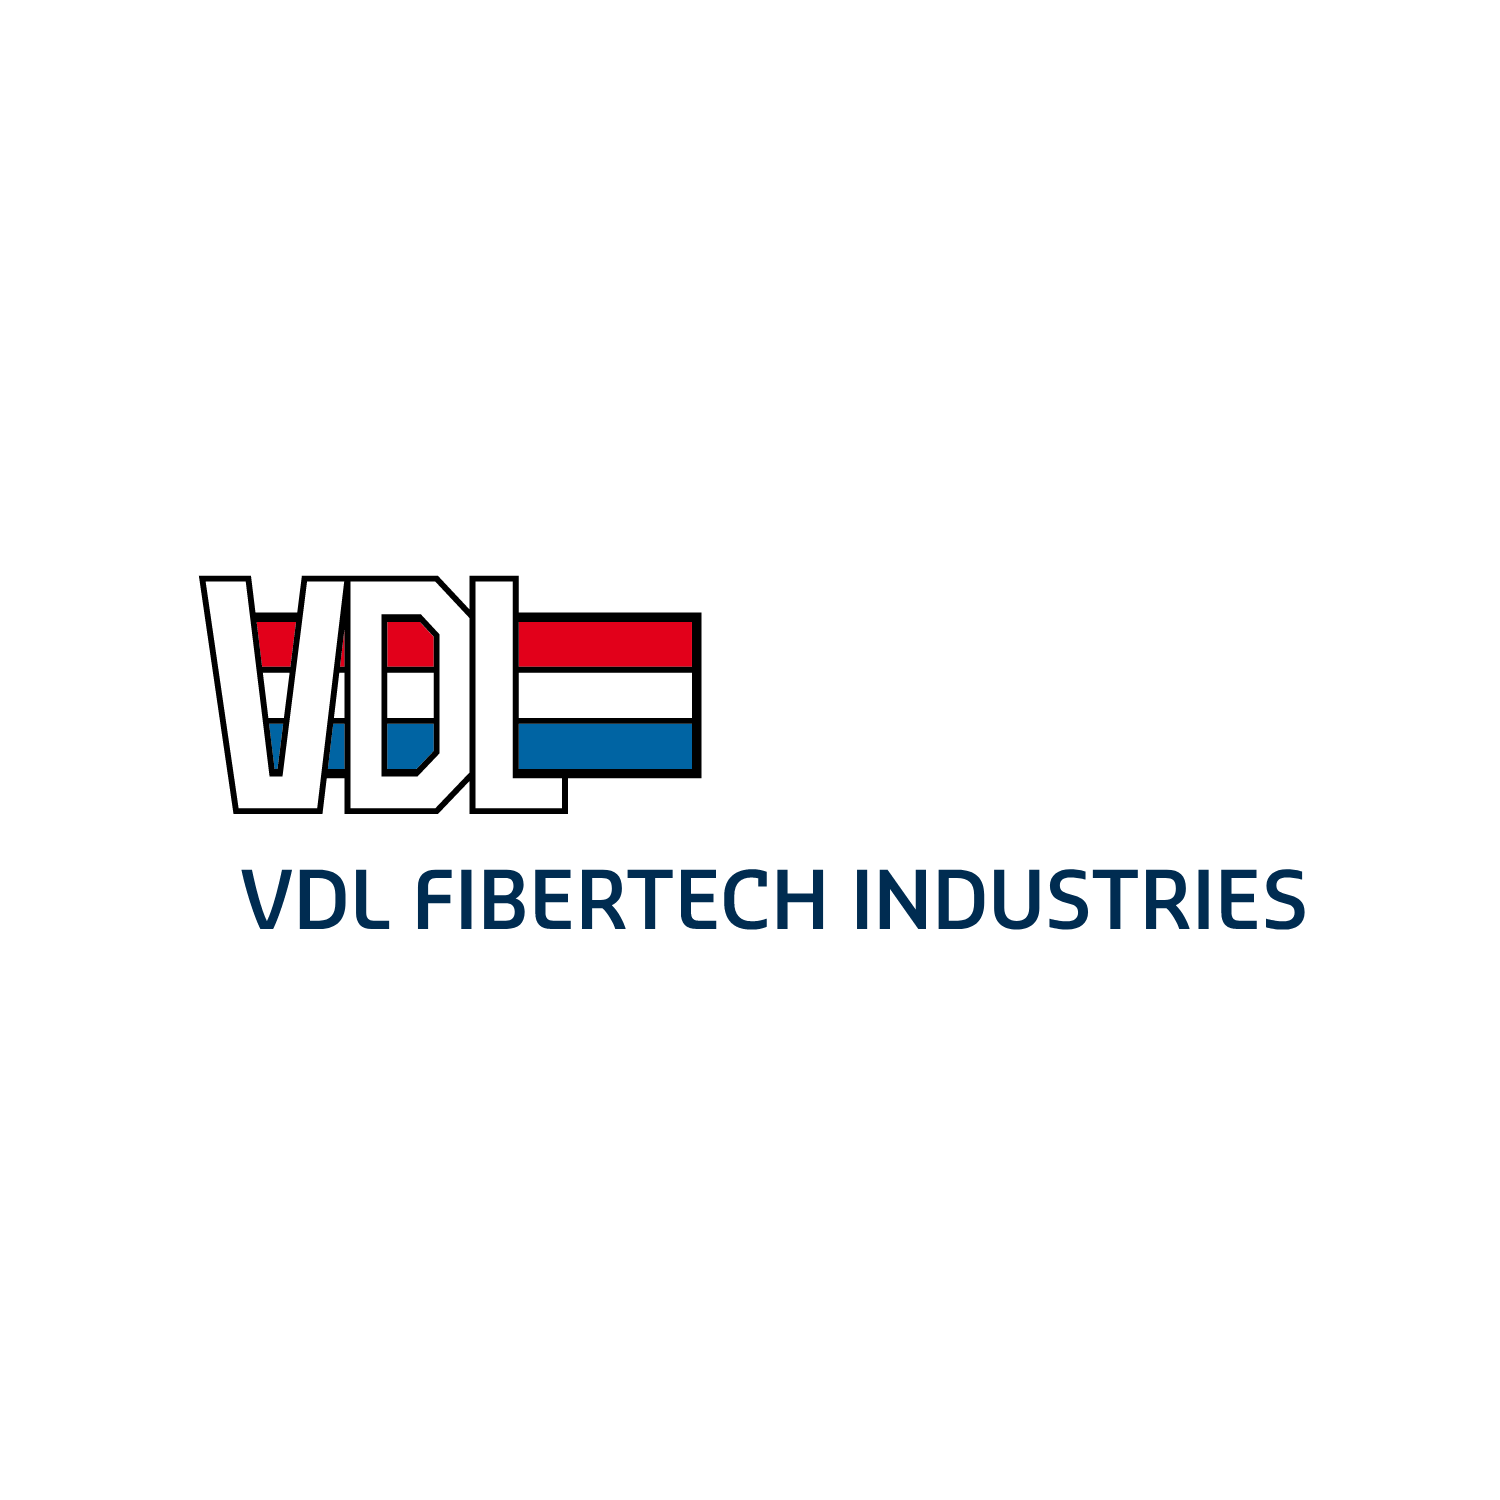 VDL Fibertech Industries